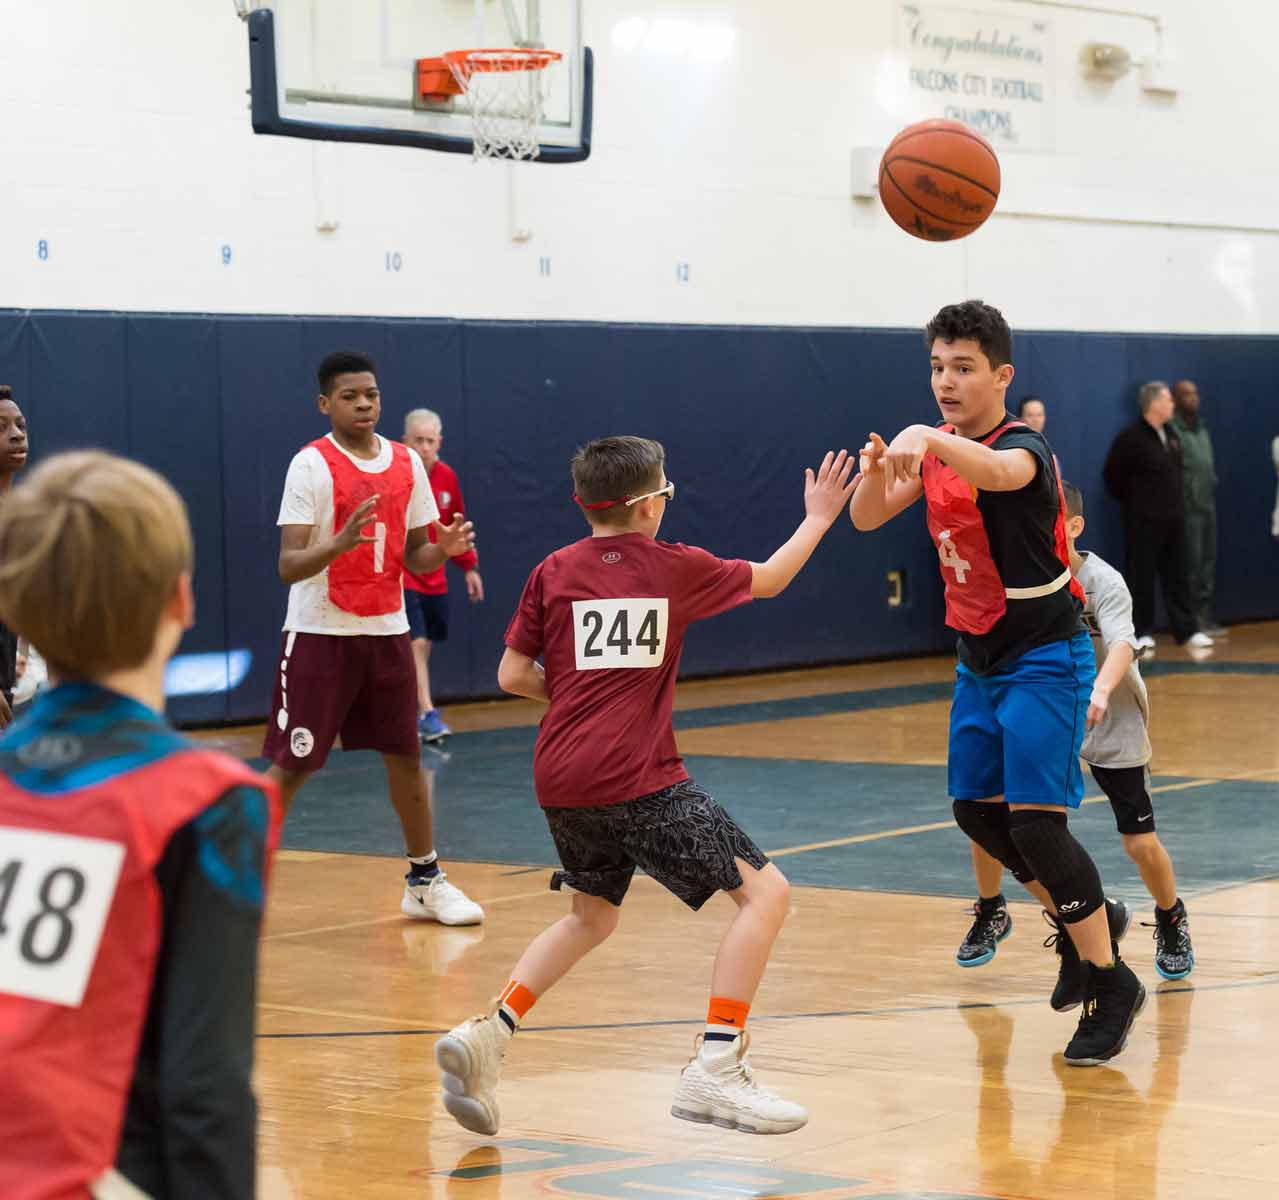 boys playing basketball